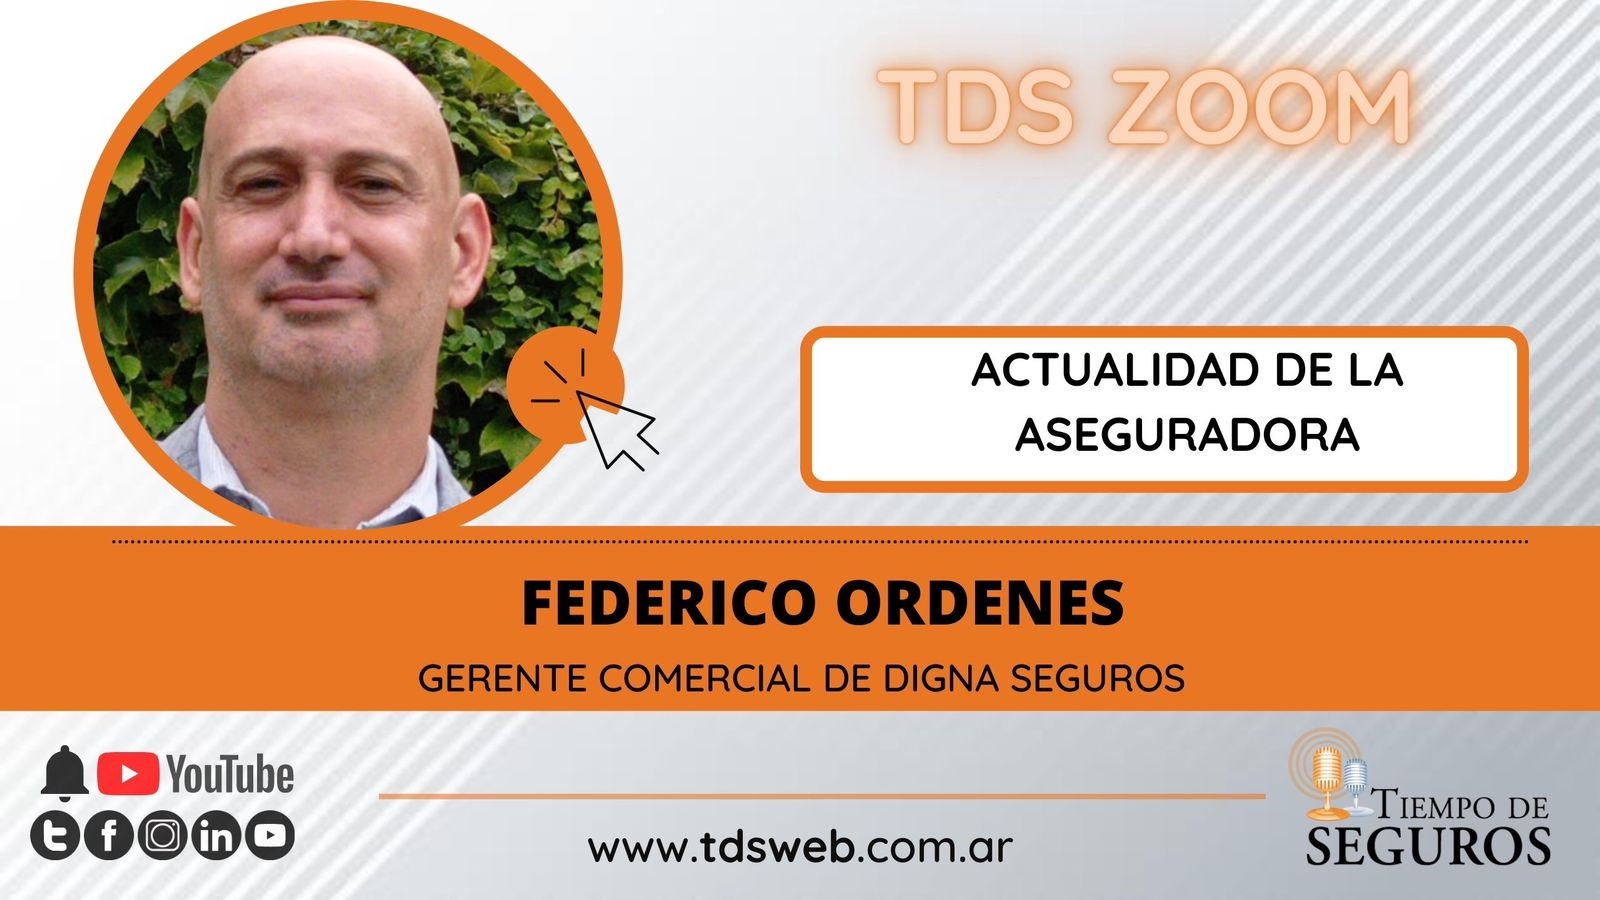 Conversamos con Federico Órdenes , Gerente Comercial de DIGNA SEGUROS, para conocer acerca de la actualidad de la asegurada en el comienzo de este 2022.